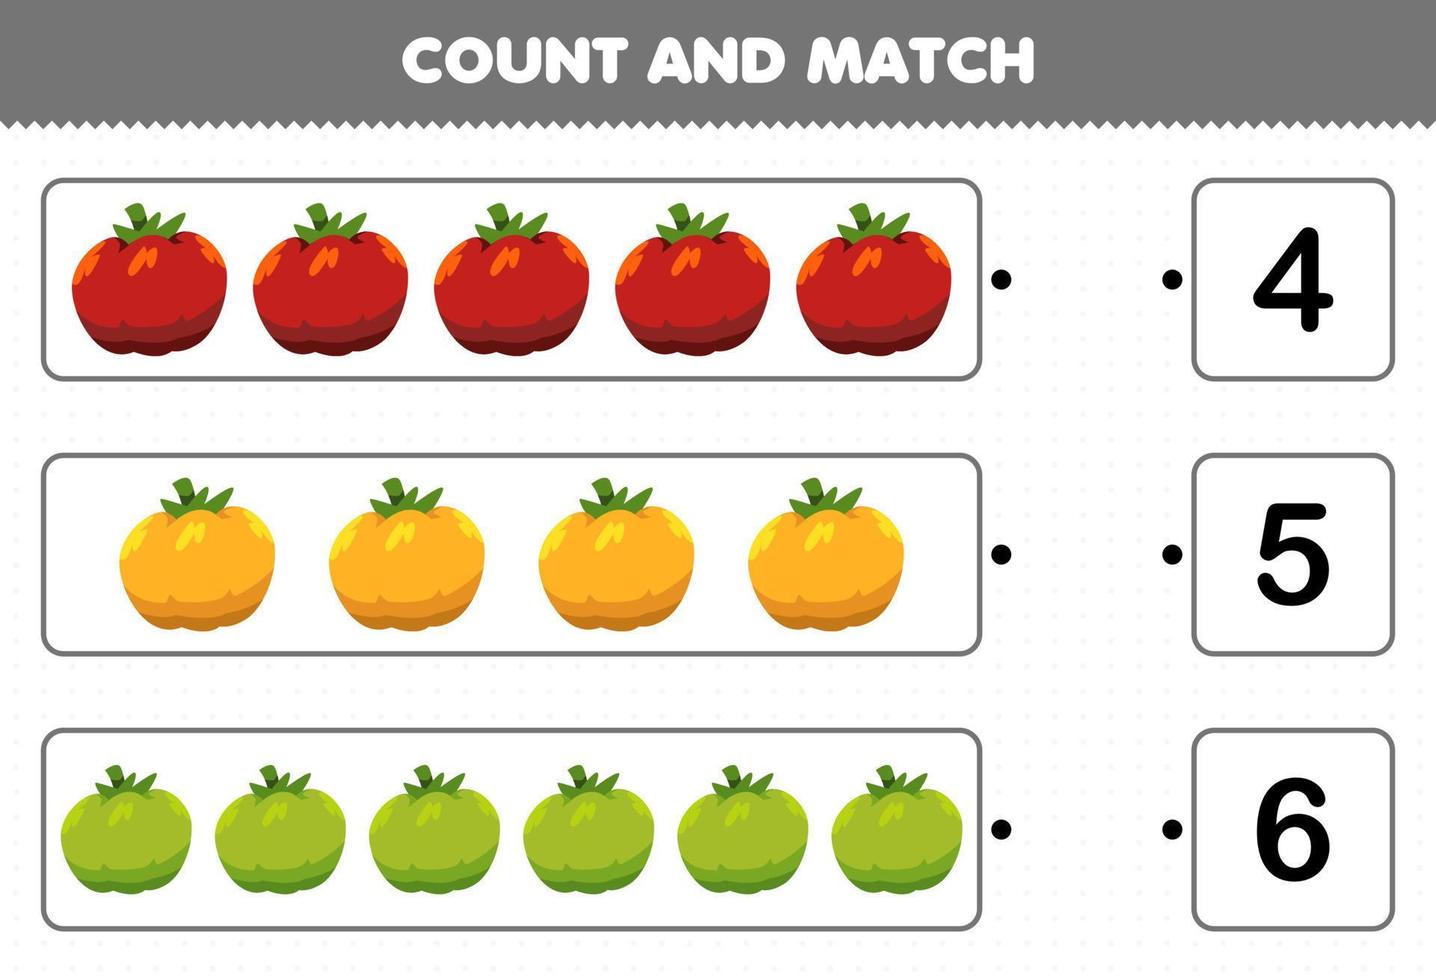 jeu éducatif pour les enfants compter et faire correspondre compter le nombre de légumes de dessin animé tomate et faire correspondre avec les bons chiffres feuille de calcul imprimable vecteur